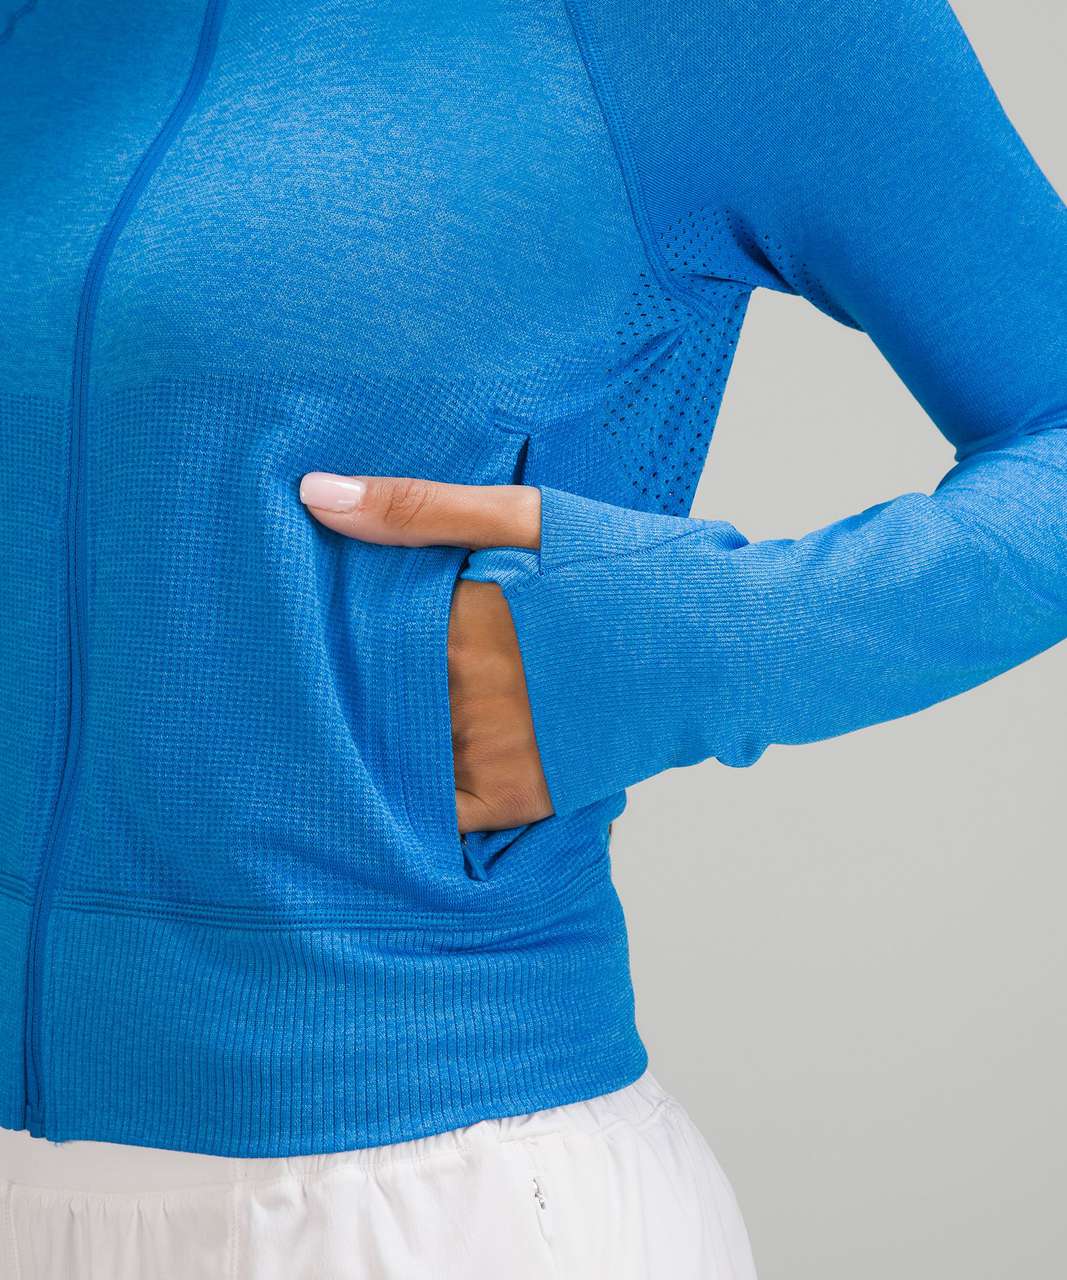 Lululemon Breathable Textured Knit Training Jacket - Poolside / Aero Blue